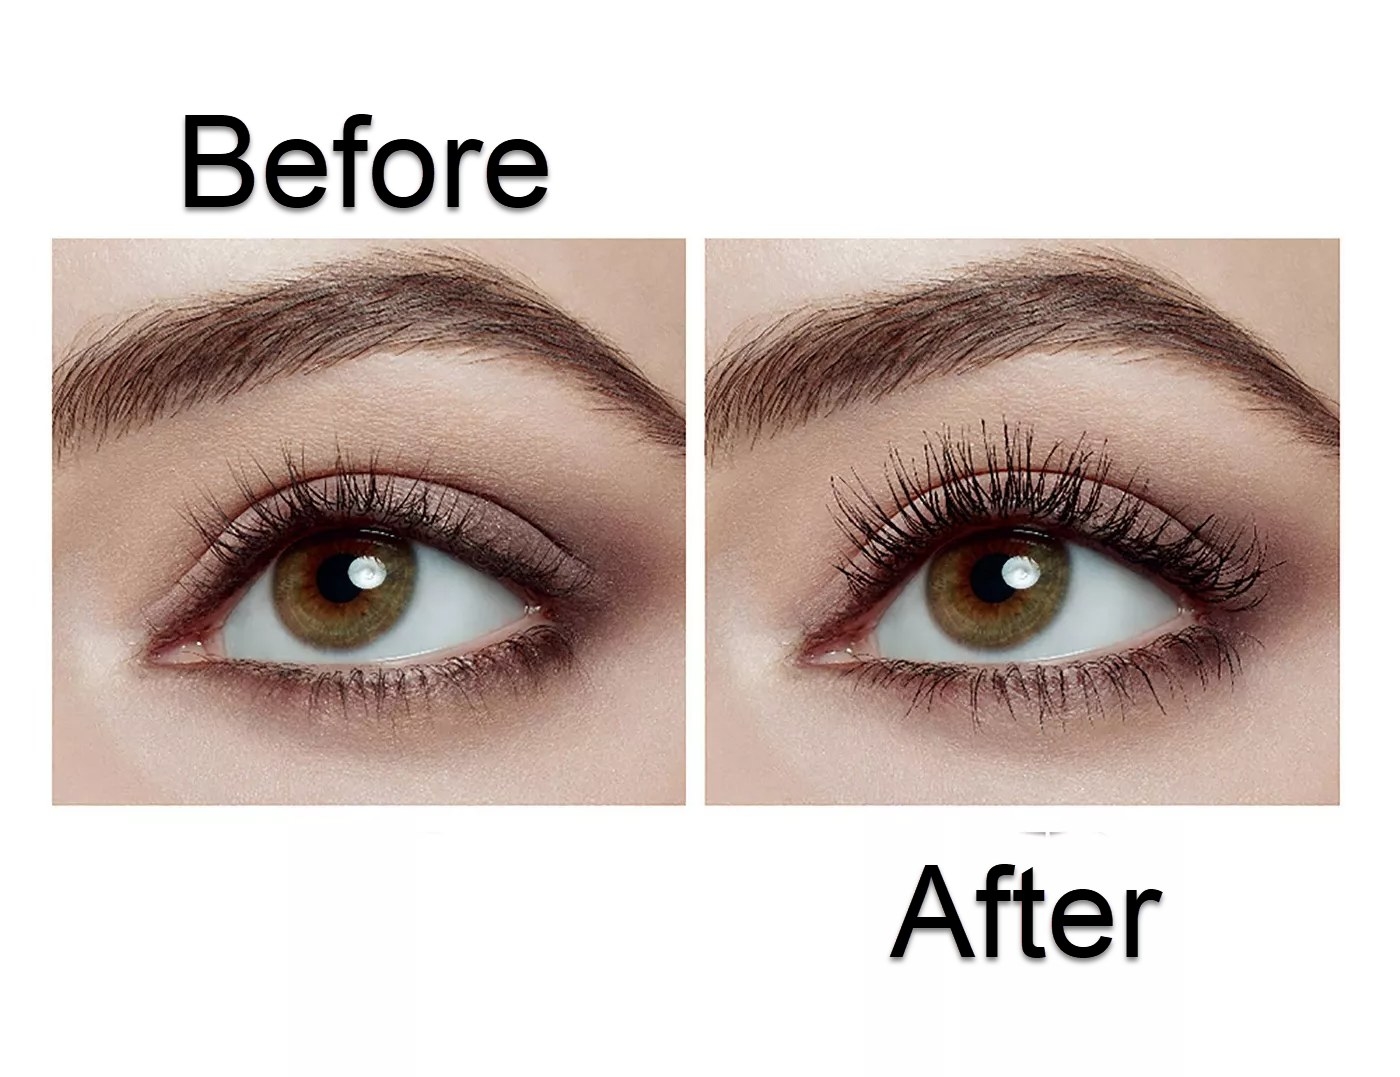 A split image of eyelashes before mascara use (left) and after mascara use (right)